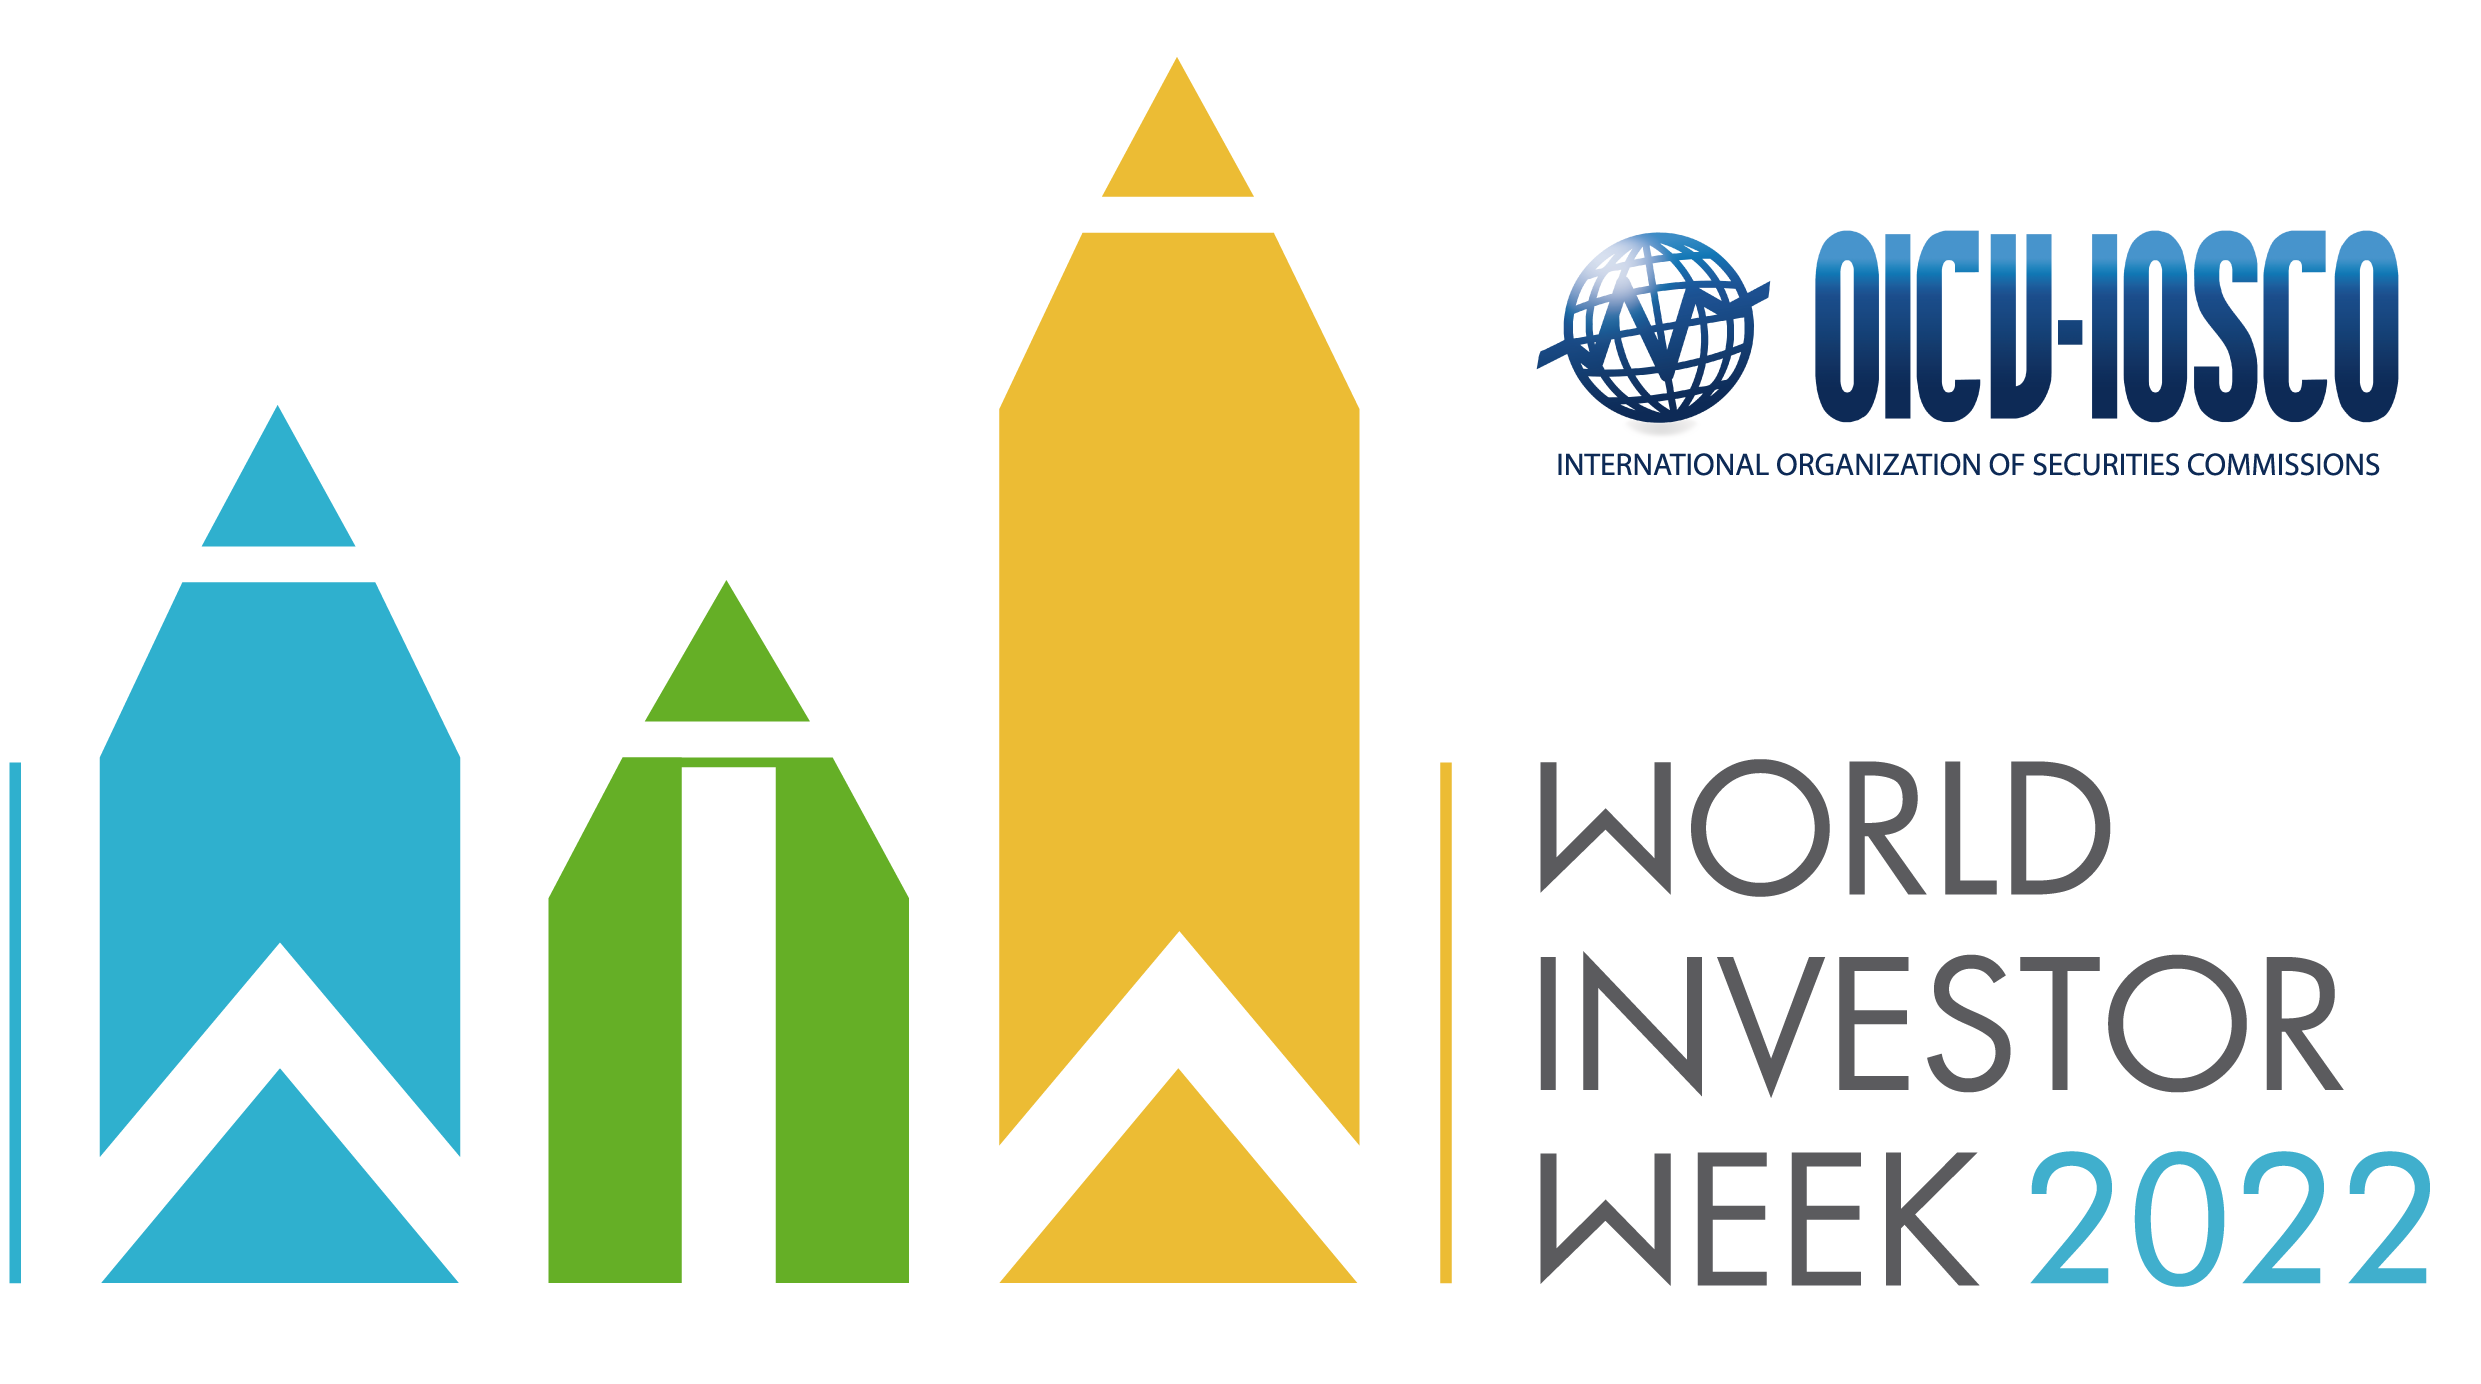 World Investor Week 2022 banner